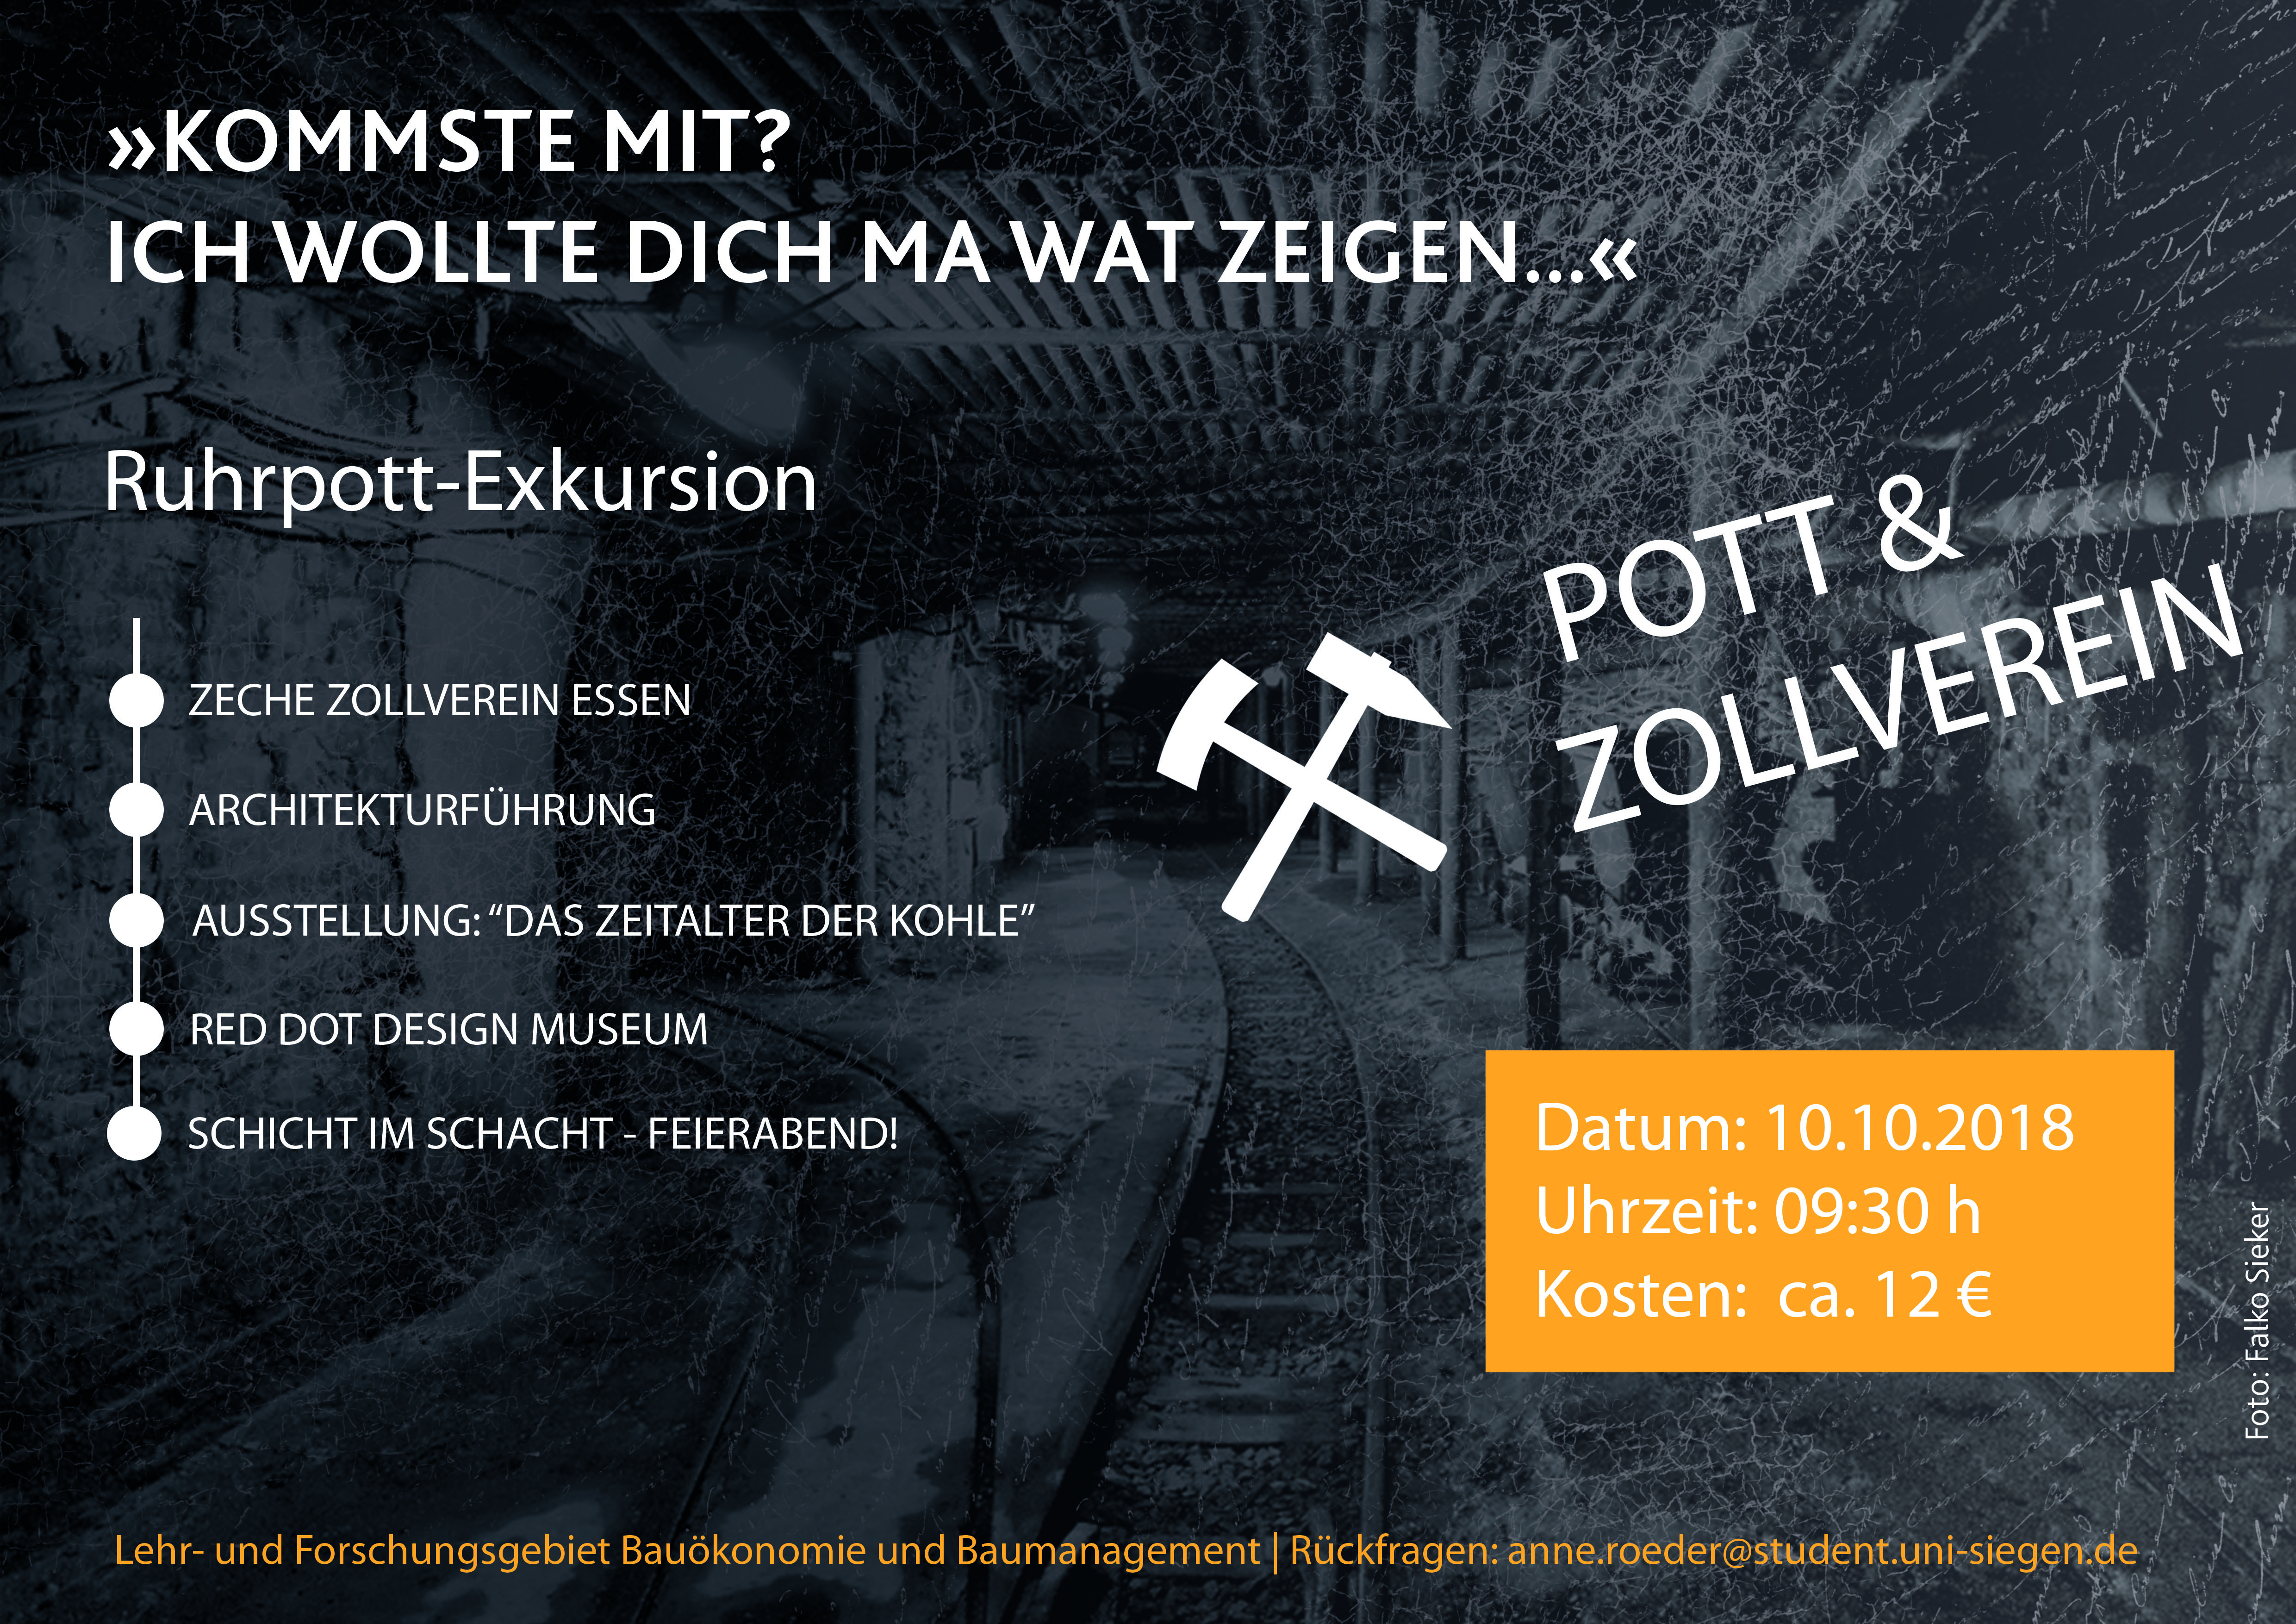 Pott & Zollverein